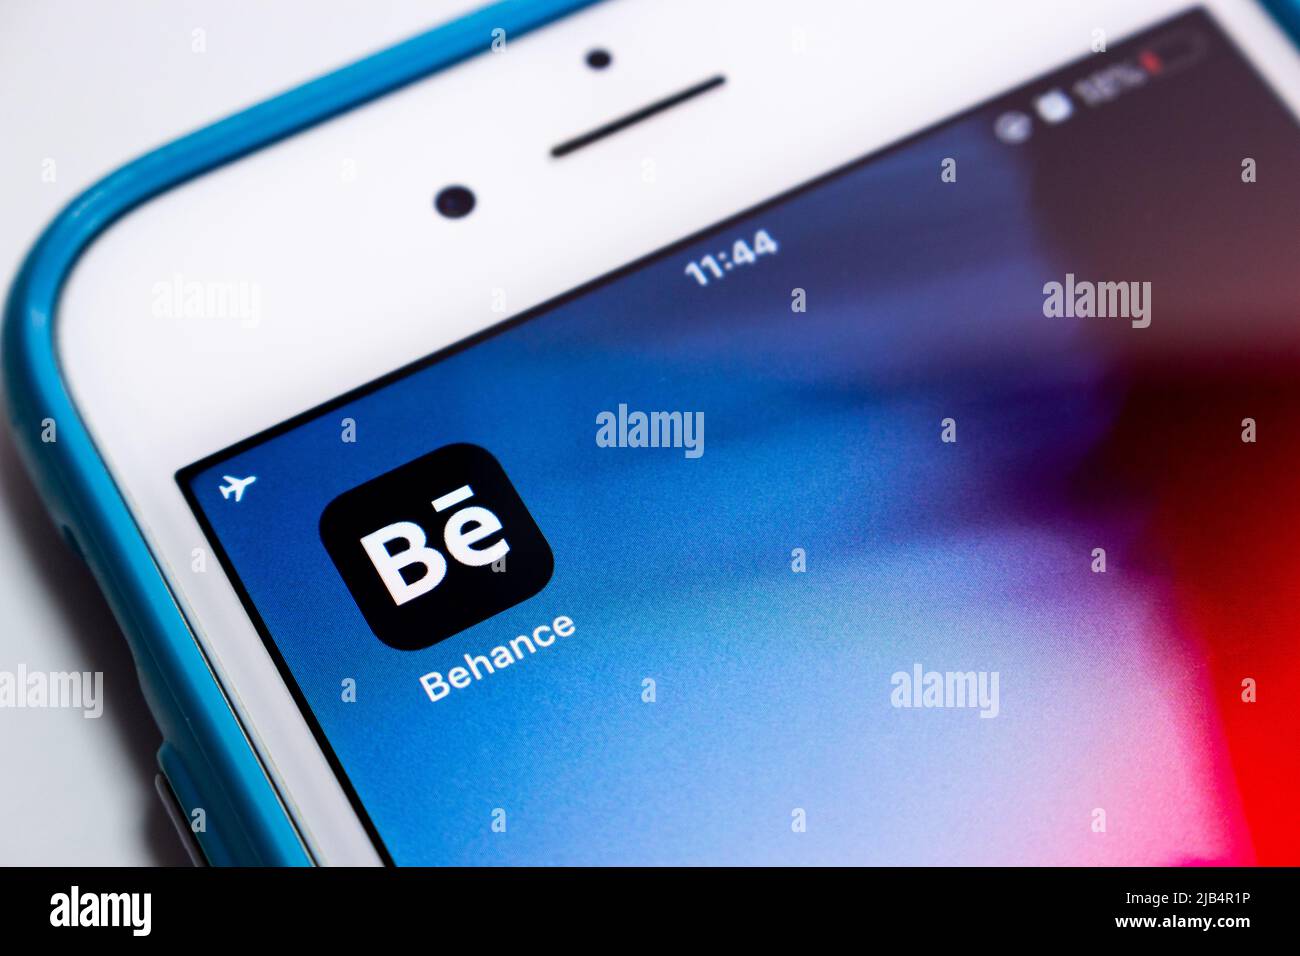 Logo di Behance, una piattaforma di social media di proprietà di Adobe, con altre applicazioni Adobe su iPhone. Nel luglio 2018, Behance contava più di 10 milioni di membri. Foto Stock